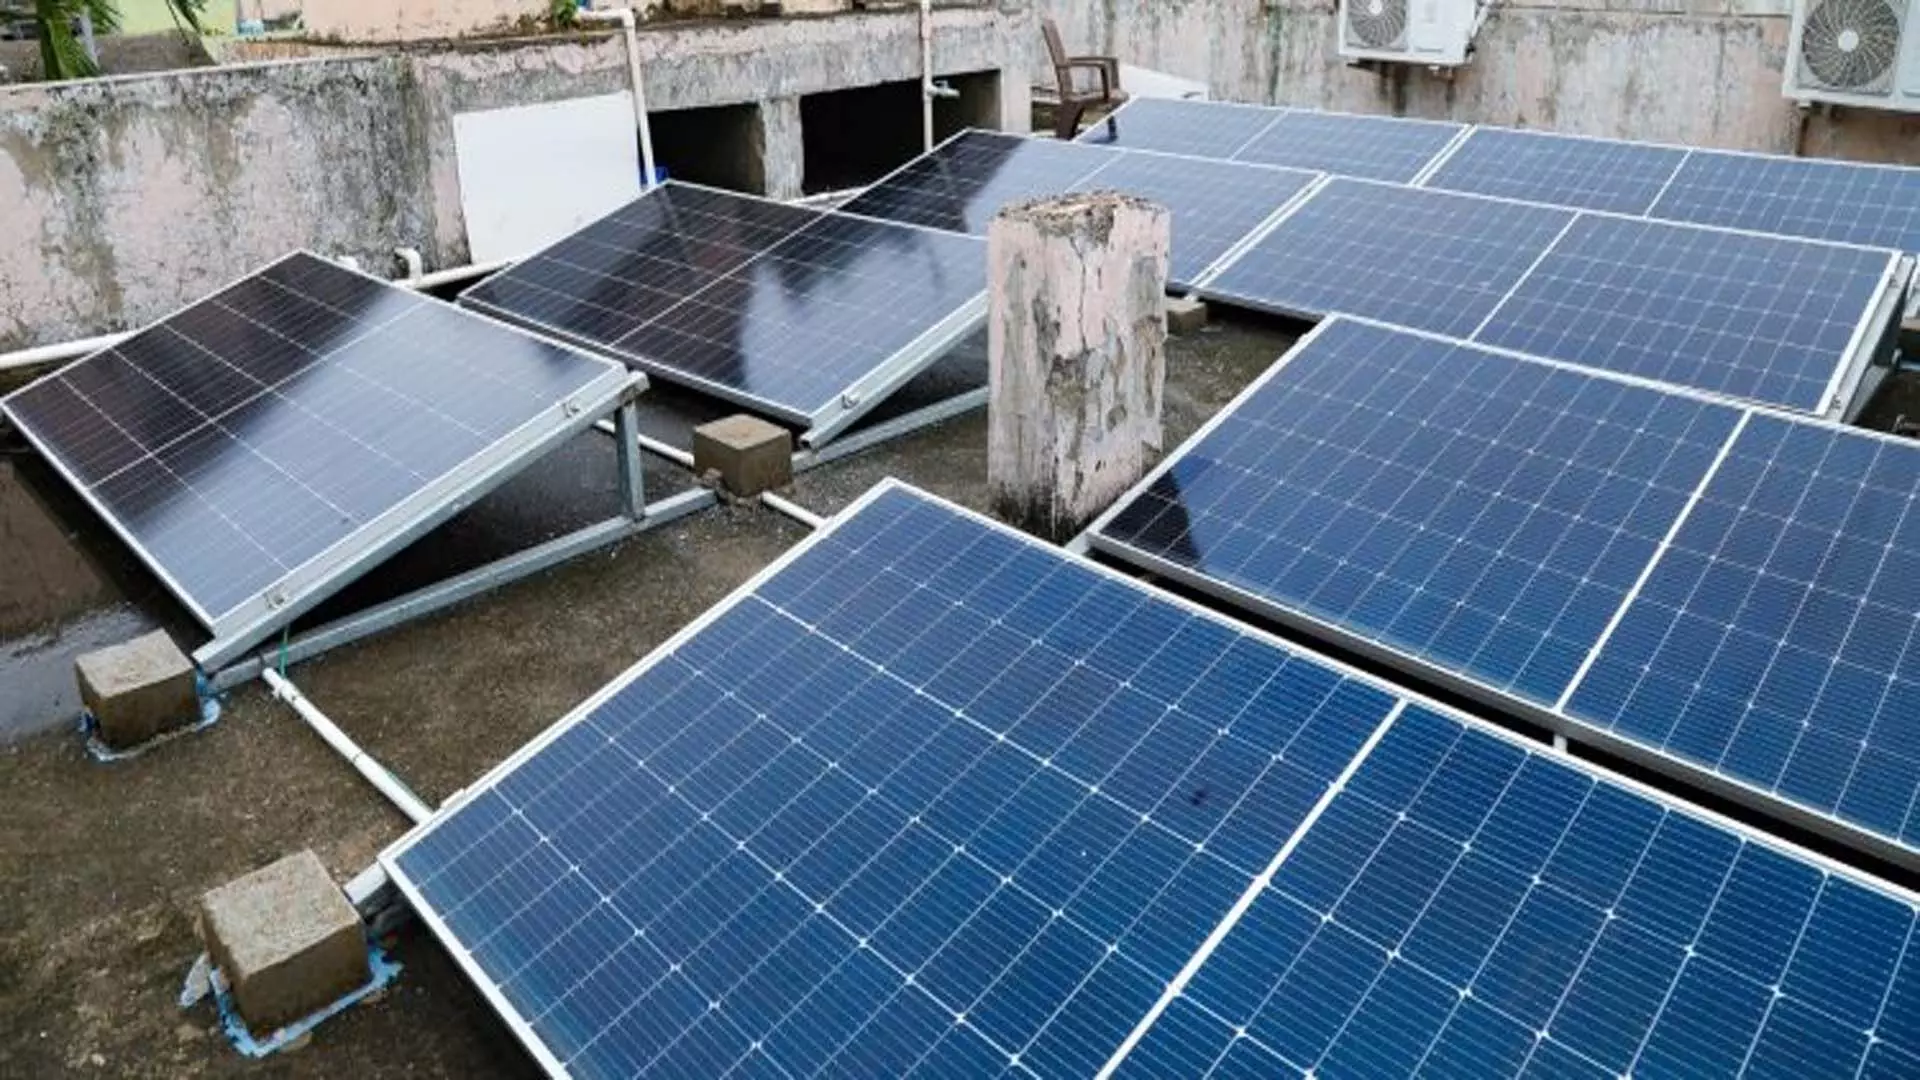 RMC ने हरित, नवीकरणीय ऊर्जा पर जोर दिया